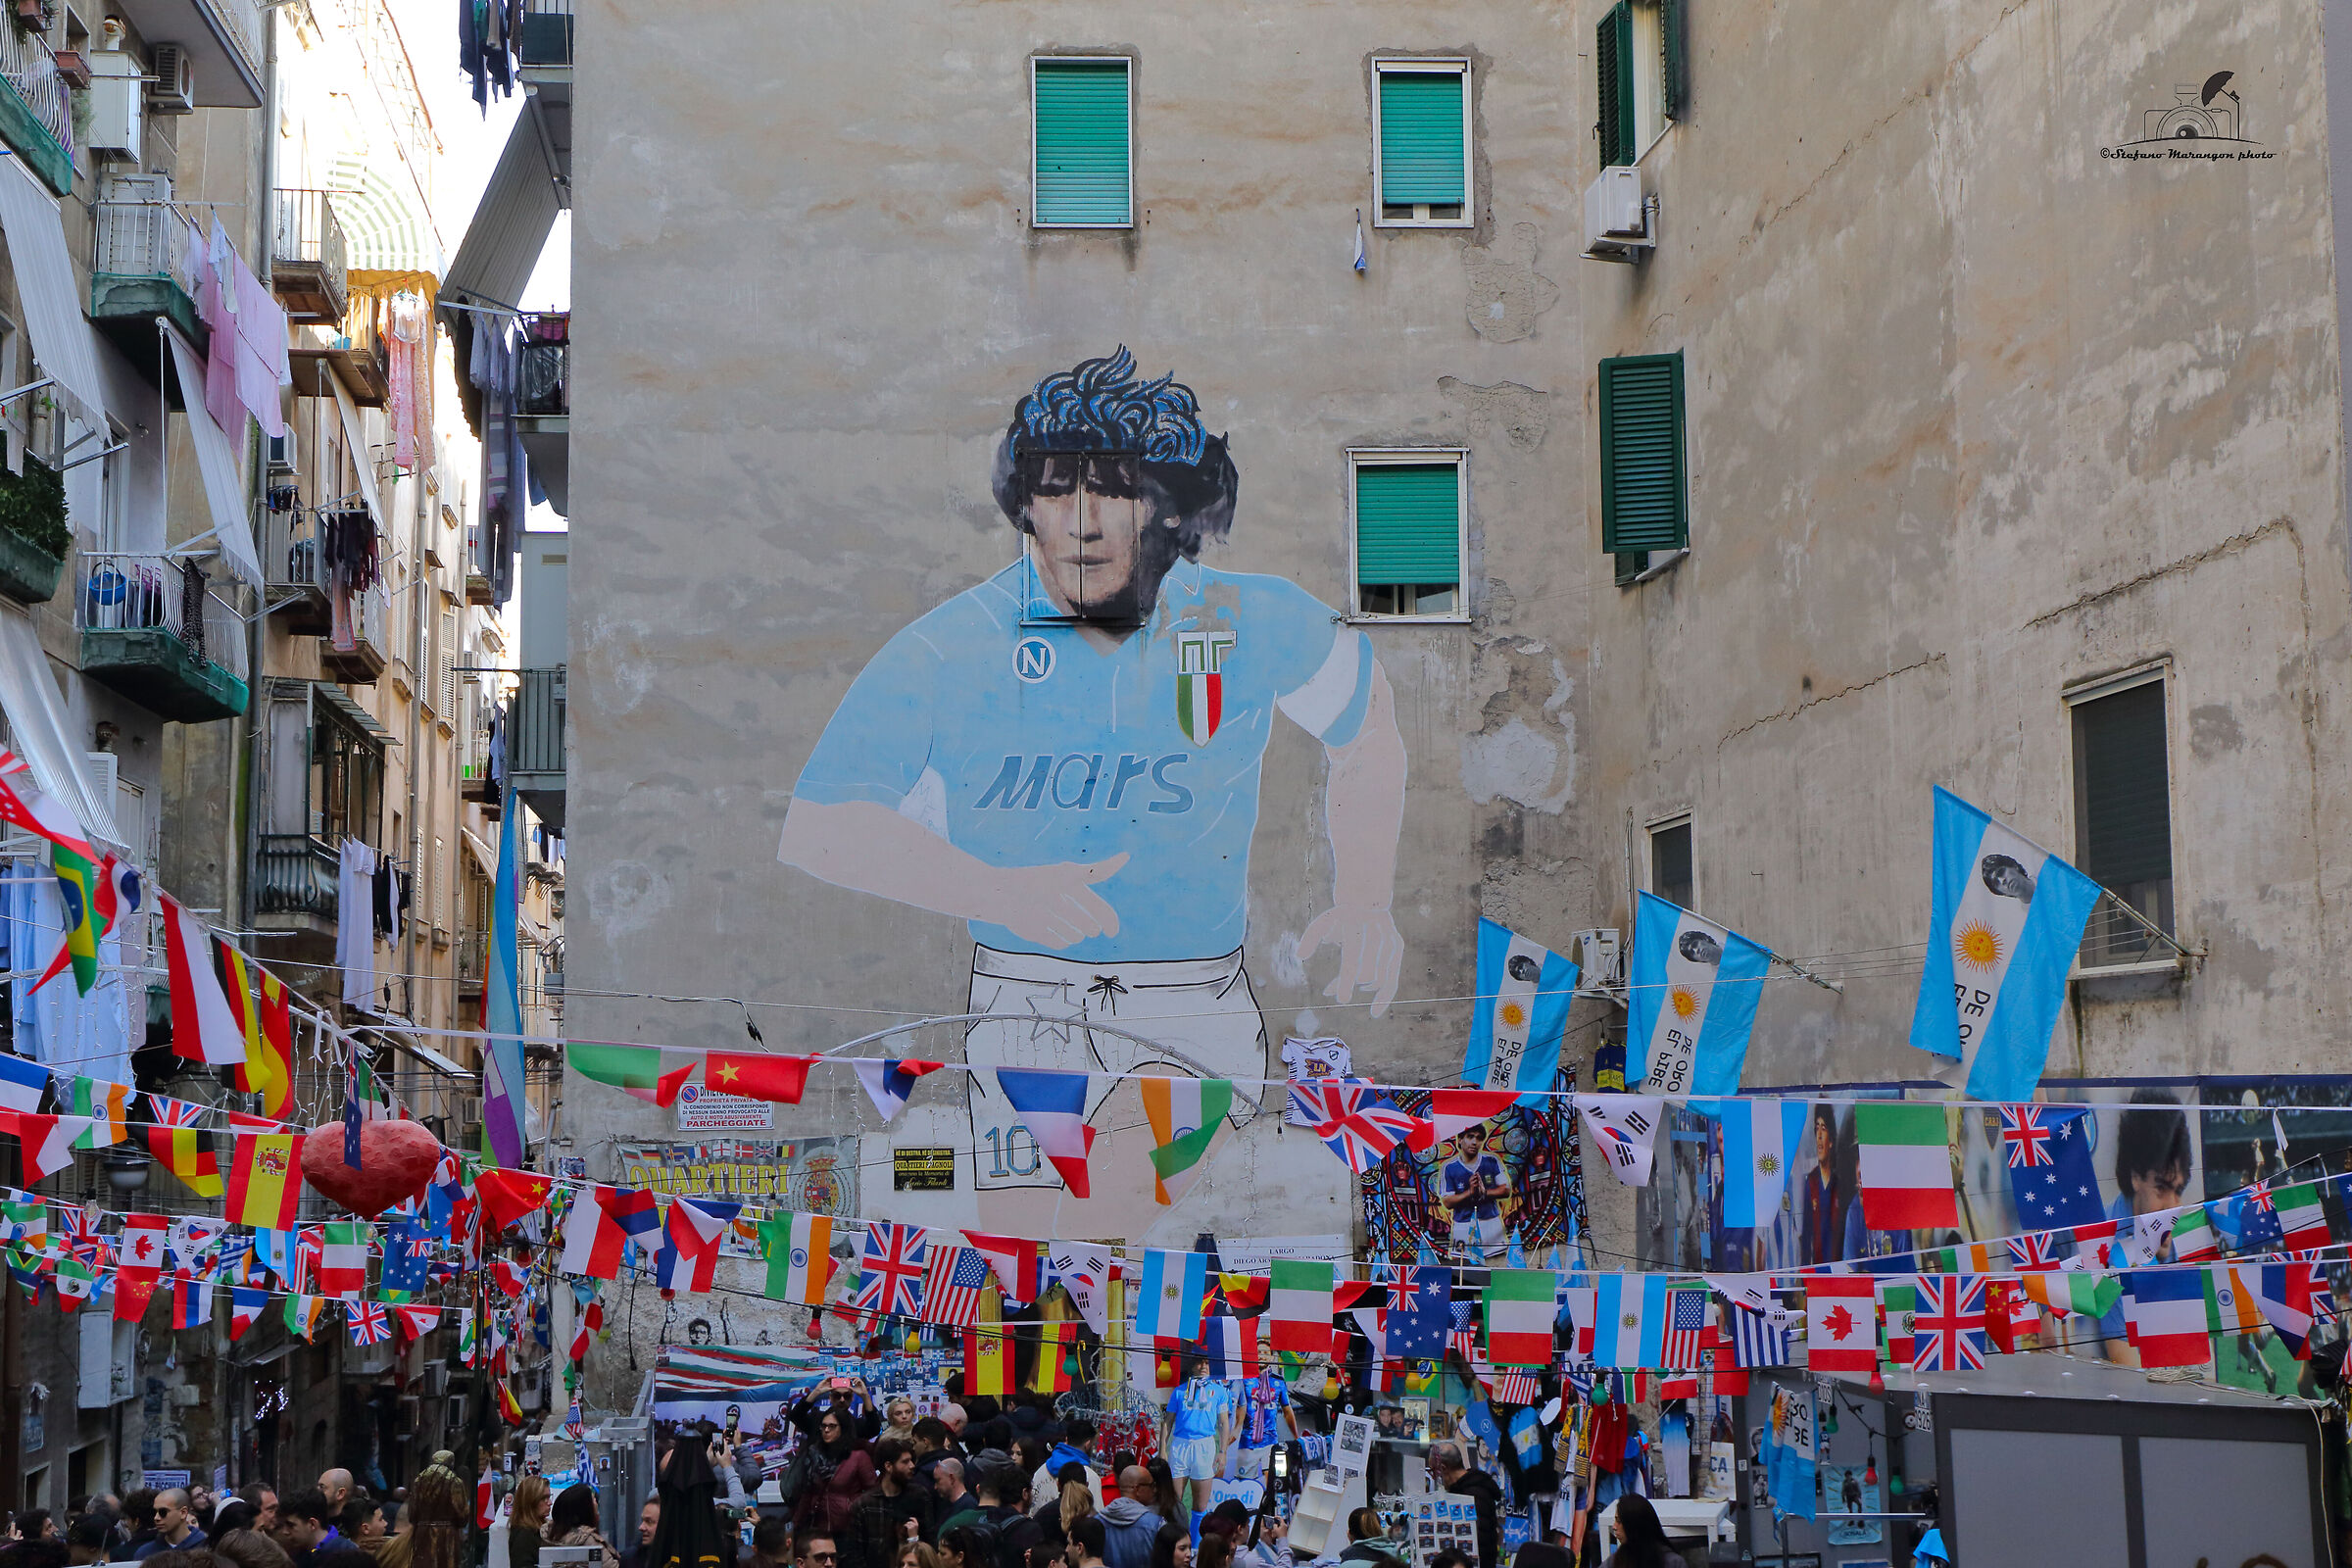 Murals of Maradona...